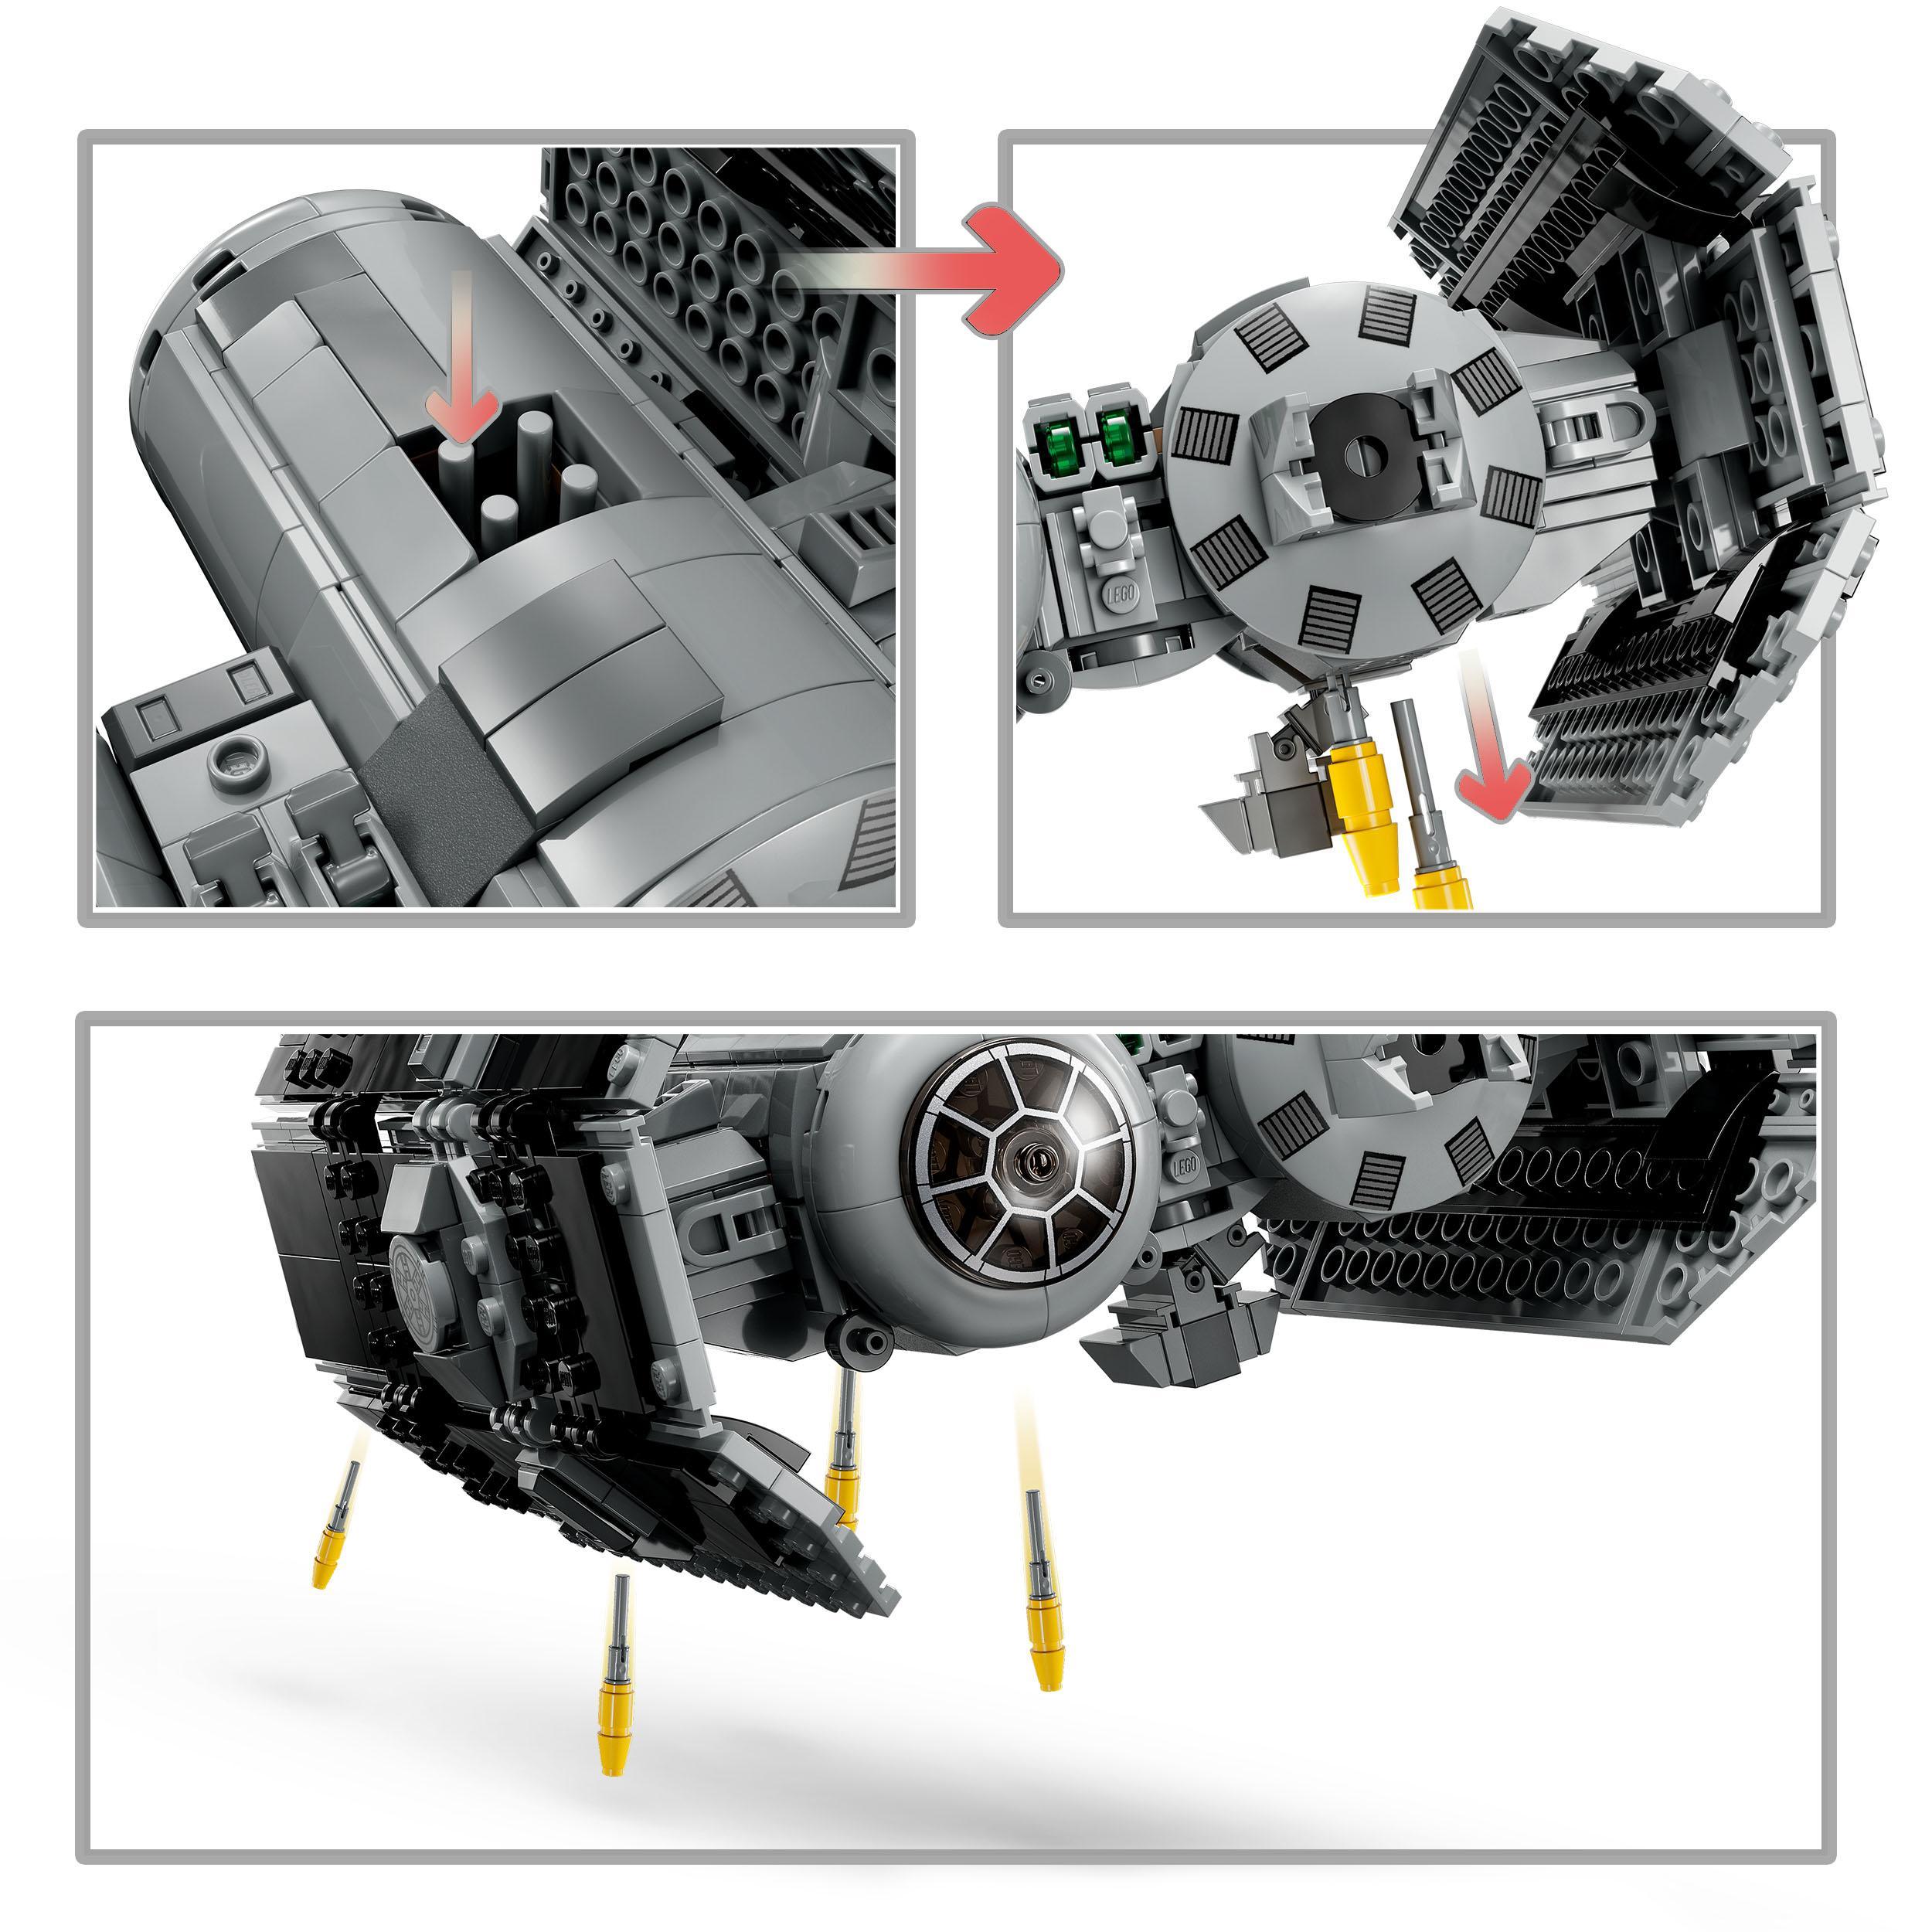 Lego star wars 75347 tie bomber model building kit, modellino da costruire di starfighter con darth vader e spada laser - LEGO® Star Wars™, Star Wars